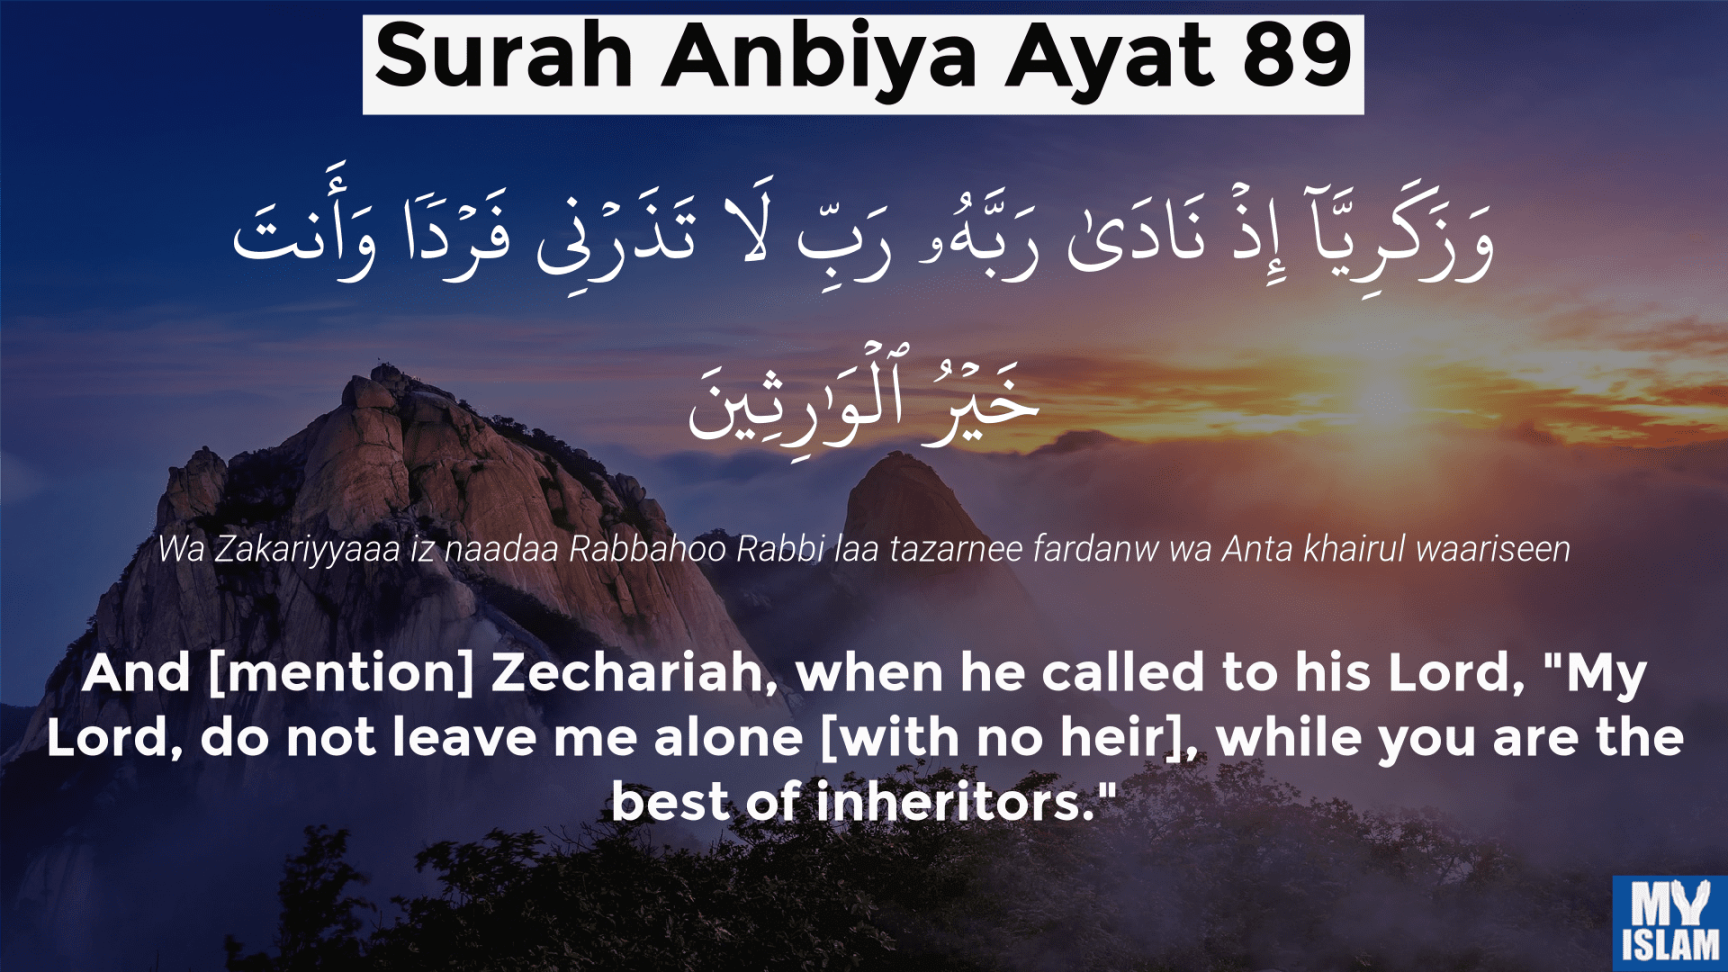 Surah Anbiya Ayat  (: Quran) With Tafsir - My Islam